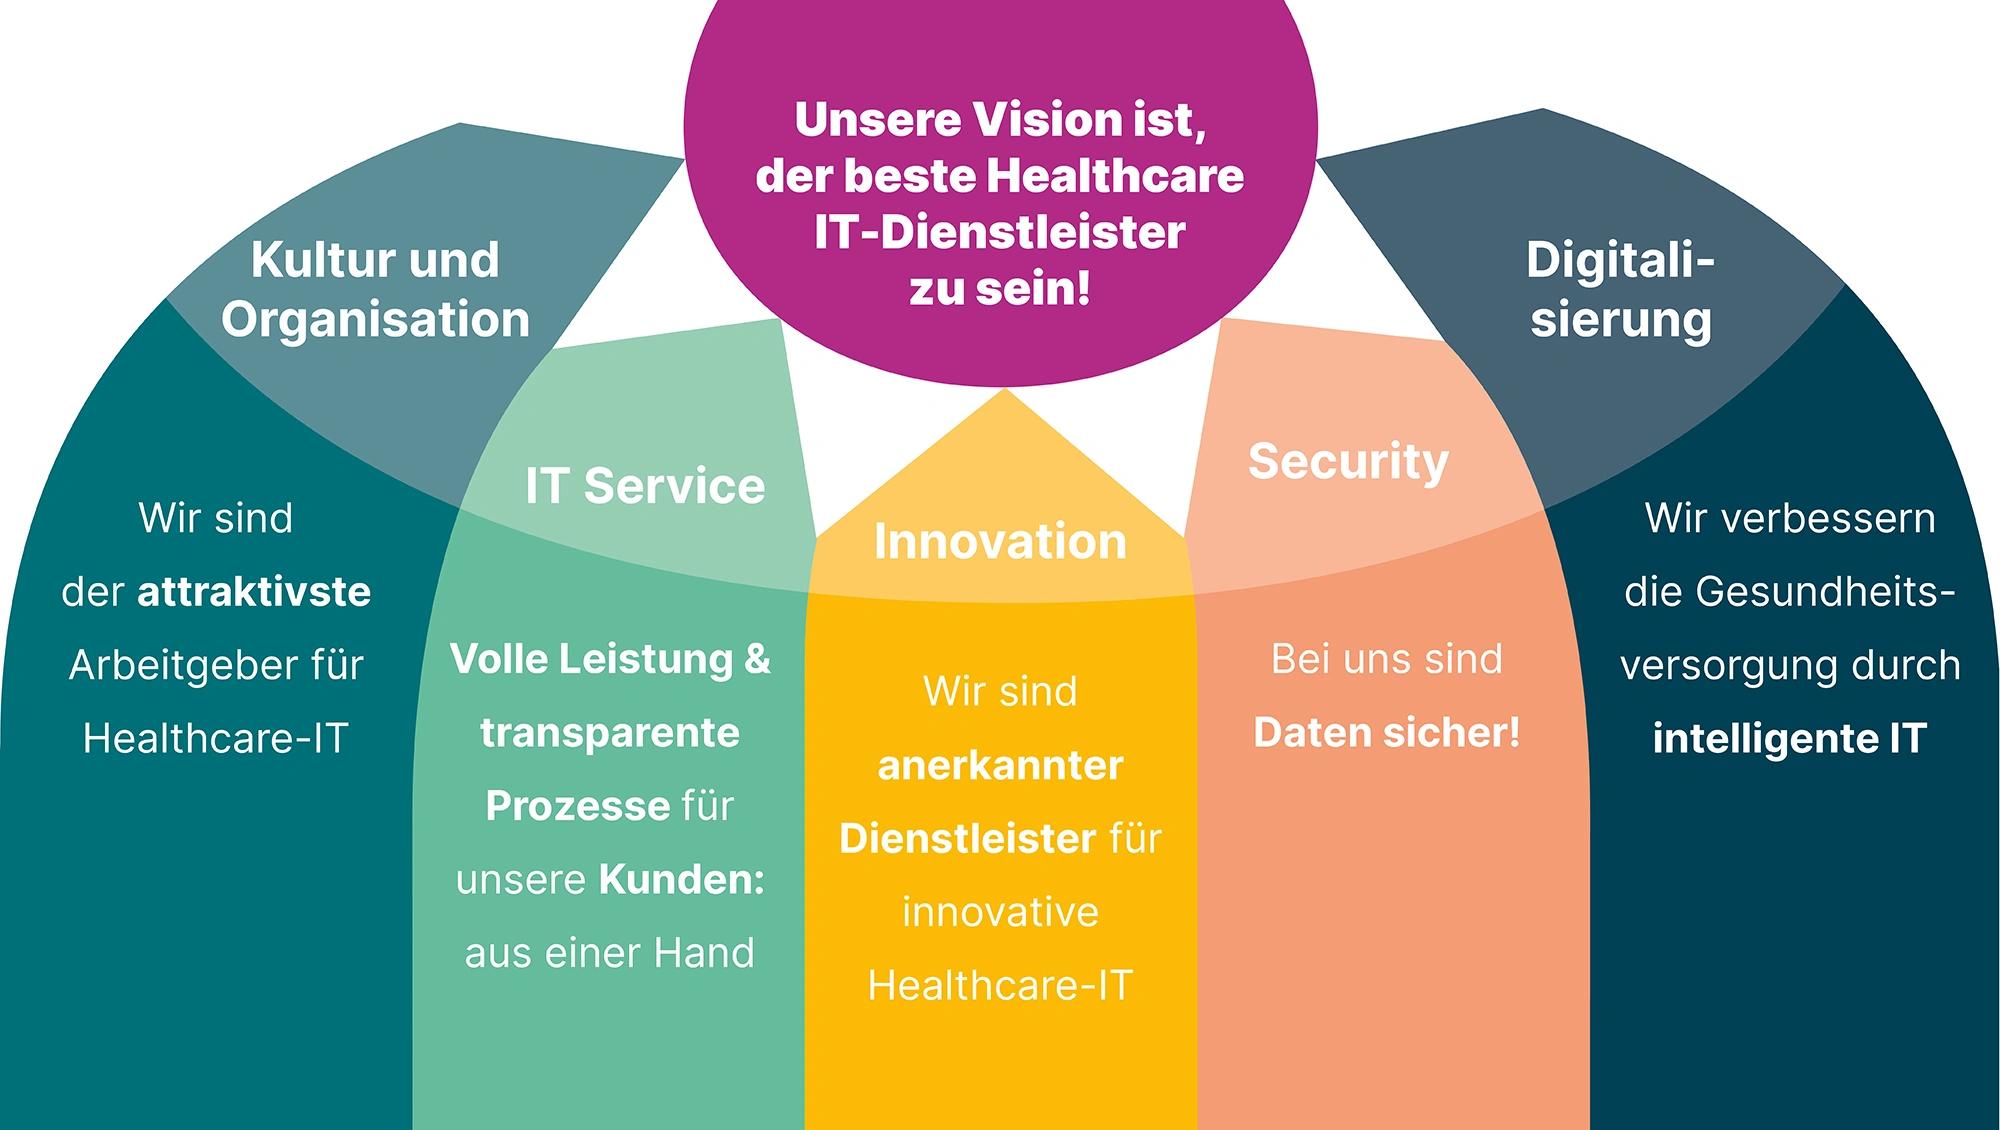 Infografik: Darstellung der Asklepios IT Vision - Bester Healthcare IT-Dienstleister sein.